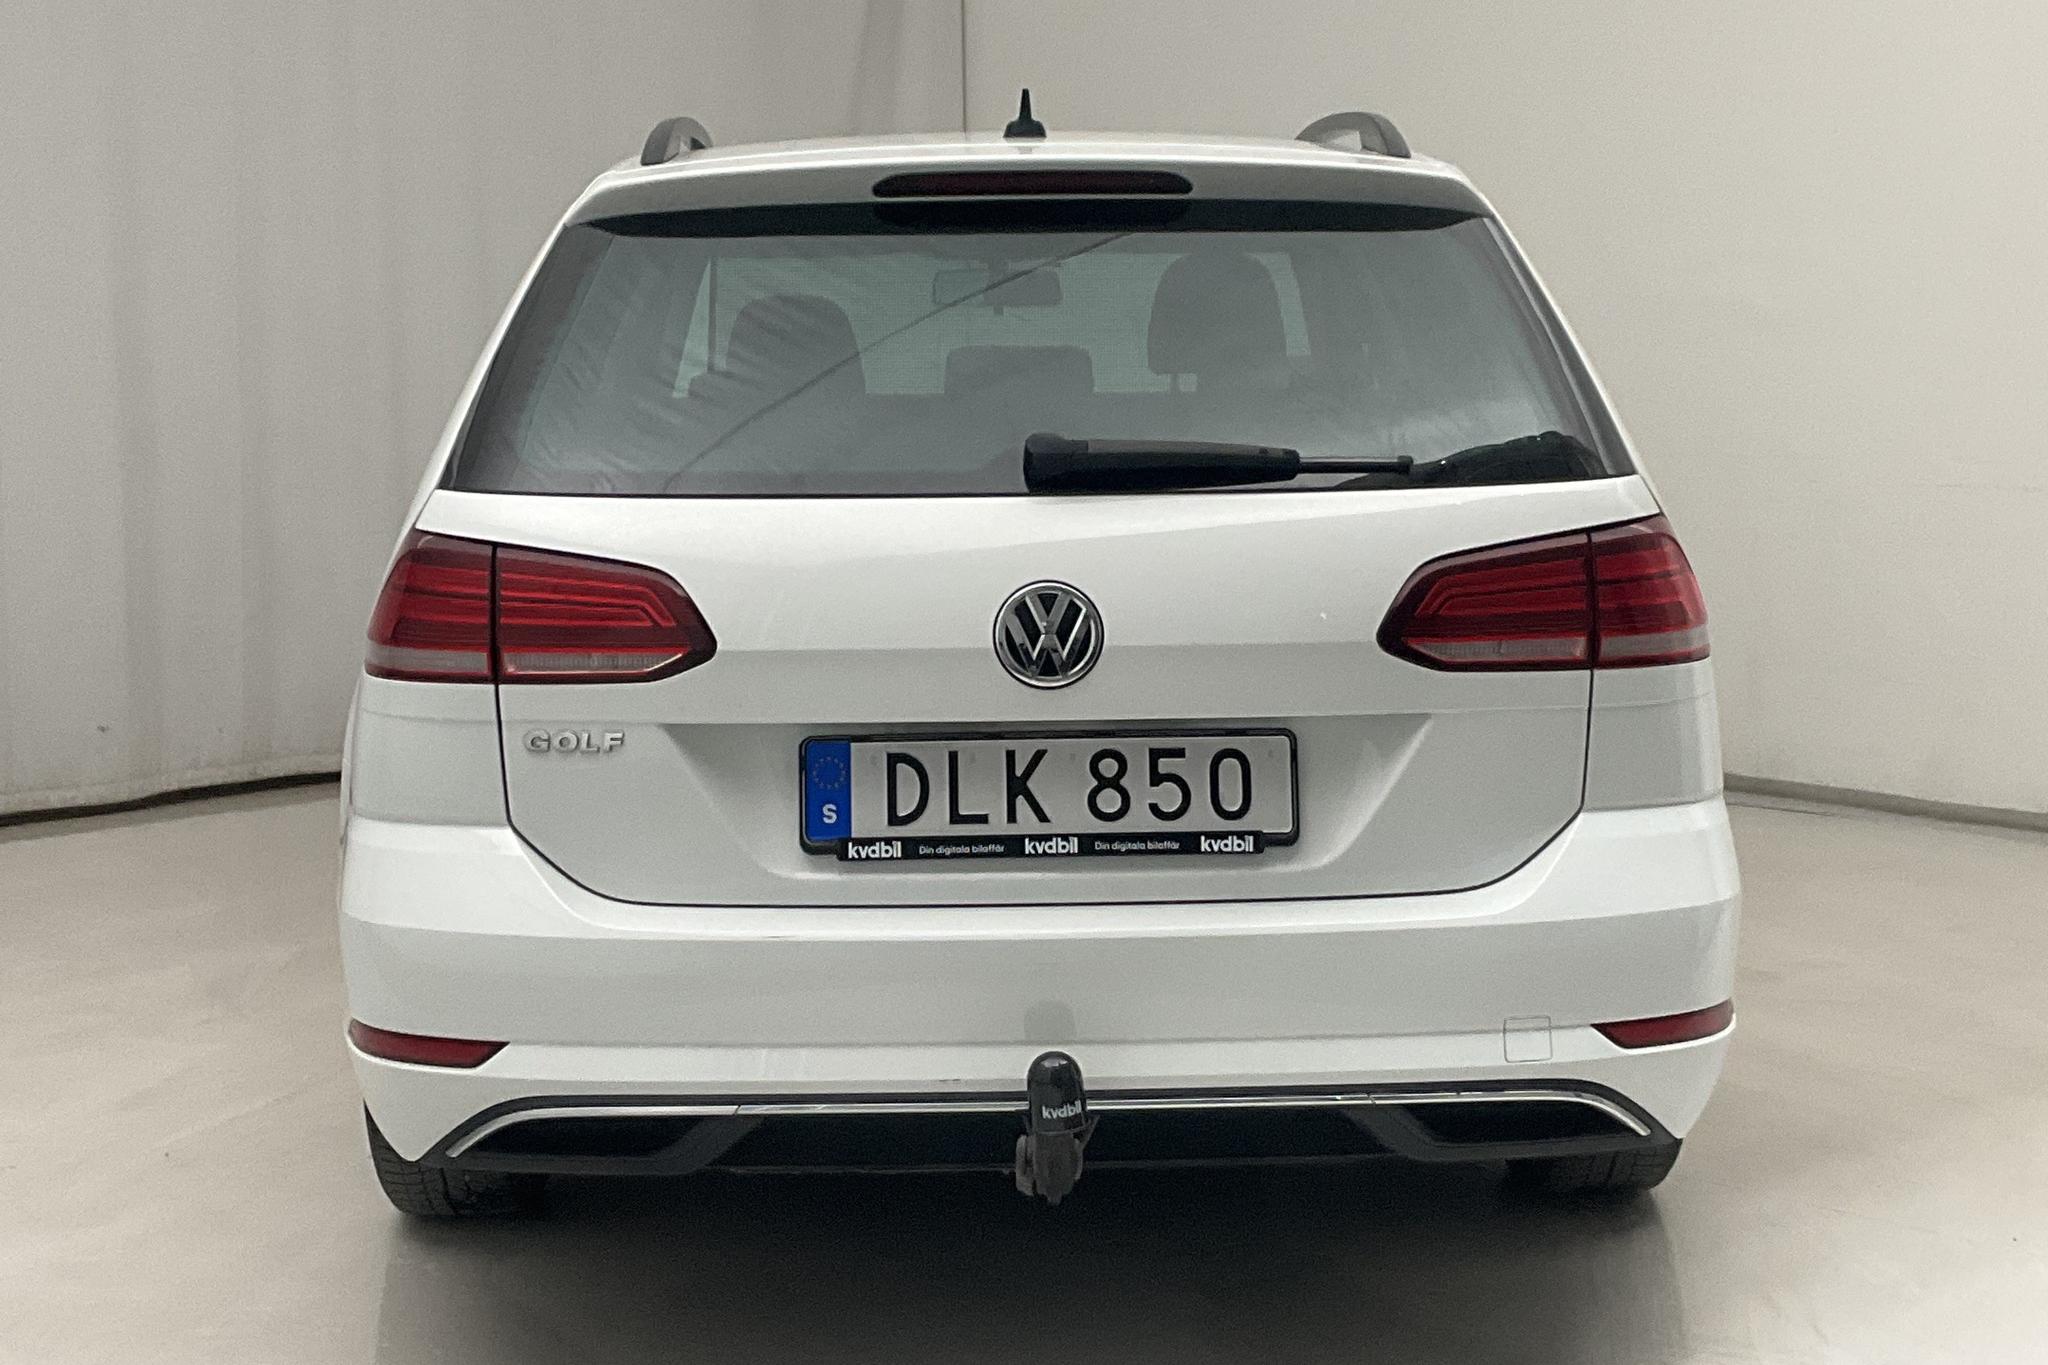 VW Golf VII 1.6 TDI Sportscombi (115hk) - 6 263 mil - Automat - vit - 2019